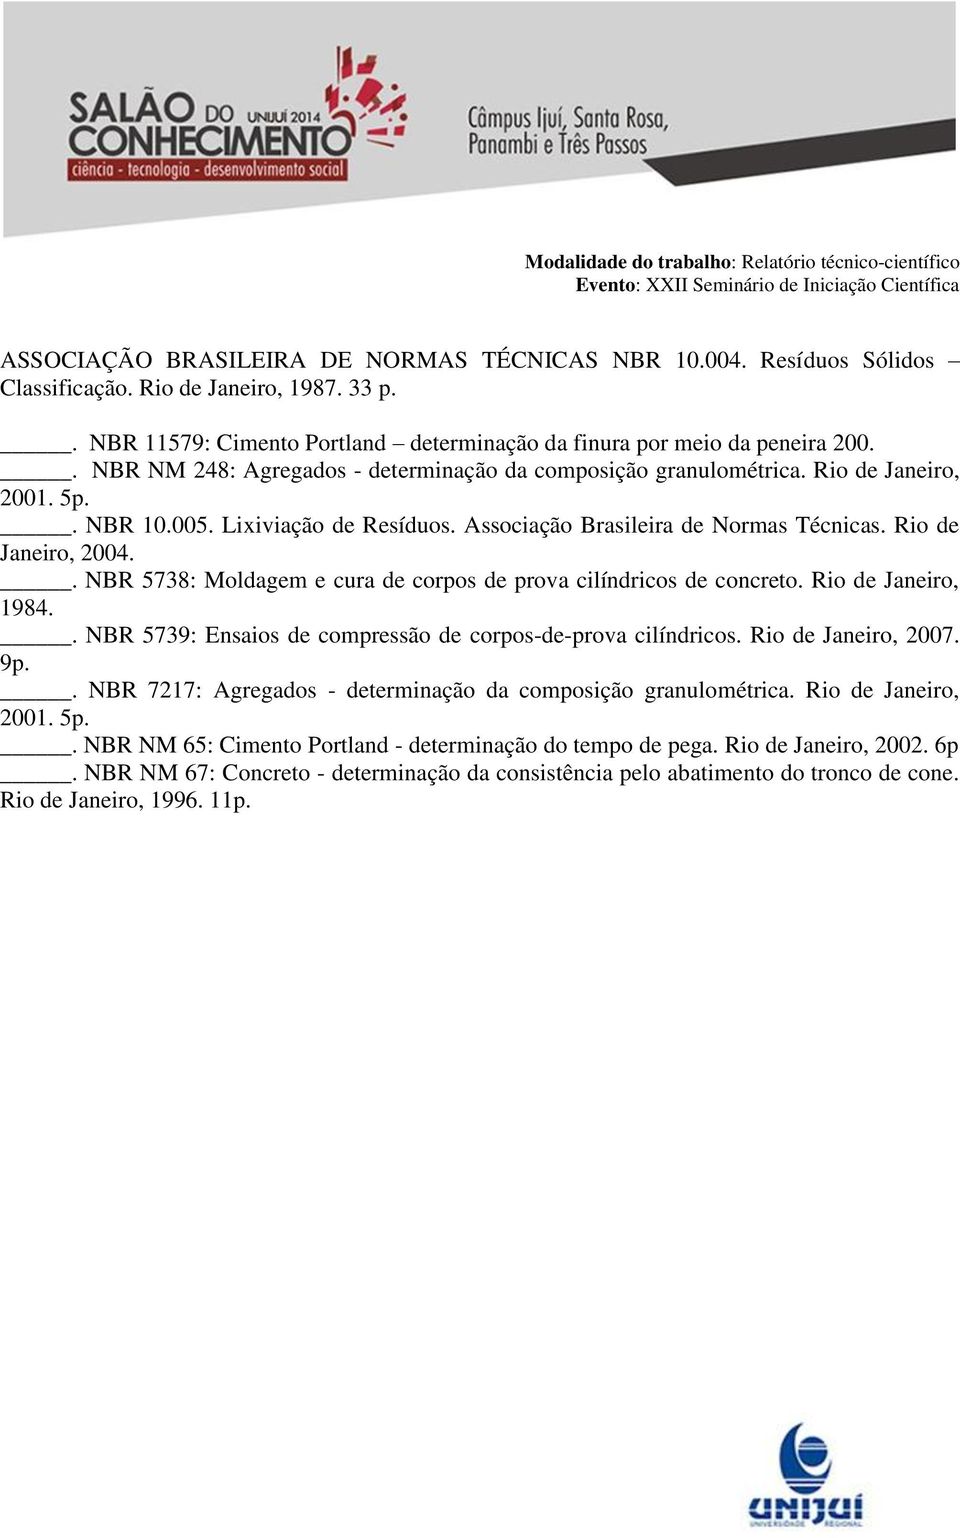 . NBR 5738: Moldagem e cura de corpos de prova cilíndricos de concreto. Rio de Janeiro, 1984.. NBR 5739: Ensaios de compressão de corpos-de-prova cilíndricos. Rio de Janeiro, 2007. 9p.